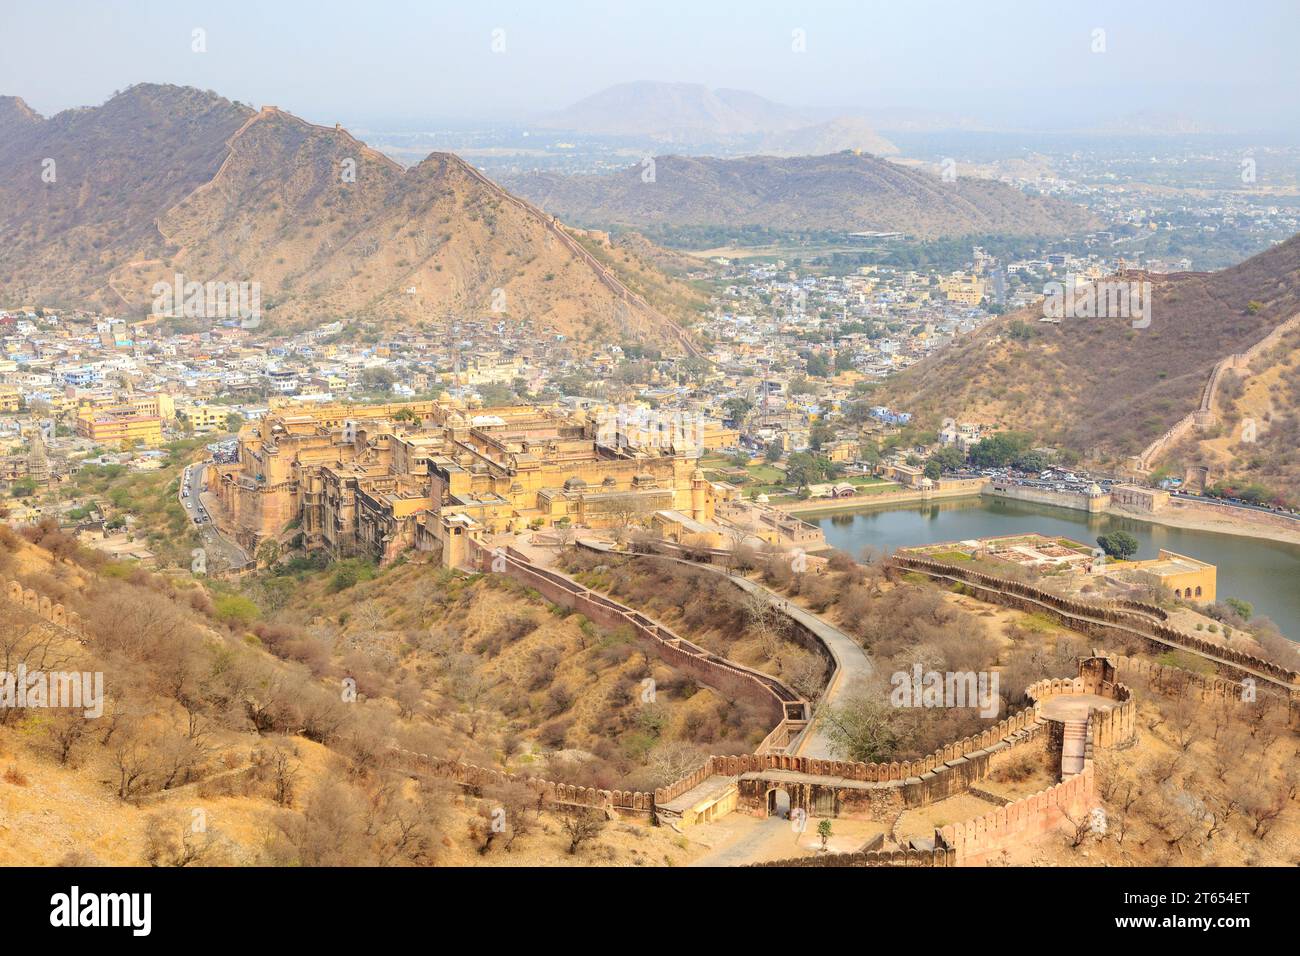 Festung von Amber, Amber Fort, Blick vom Fort Jaigarh Jaipur, Rajasthan, Indien Stock Photo